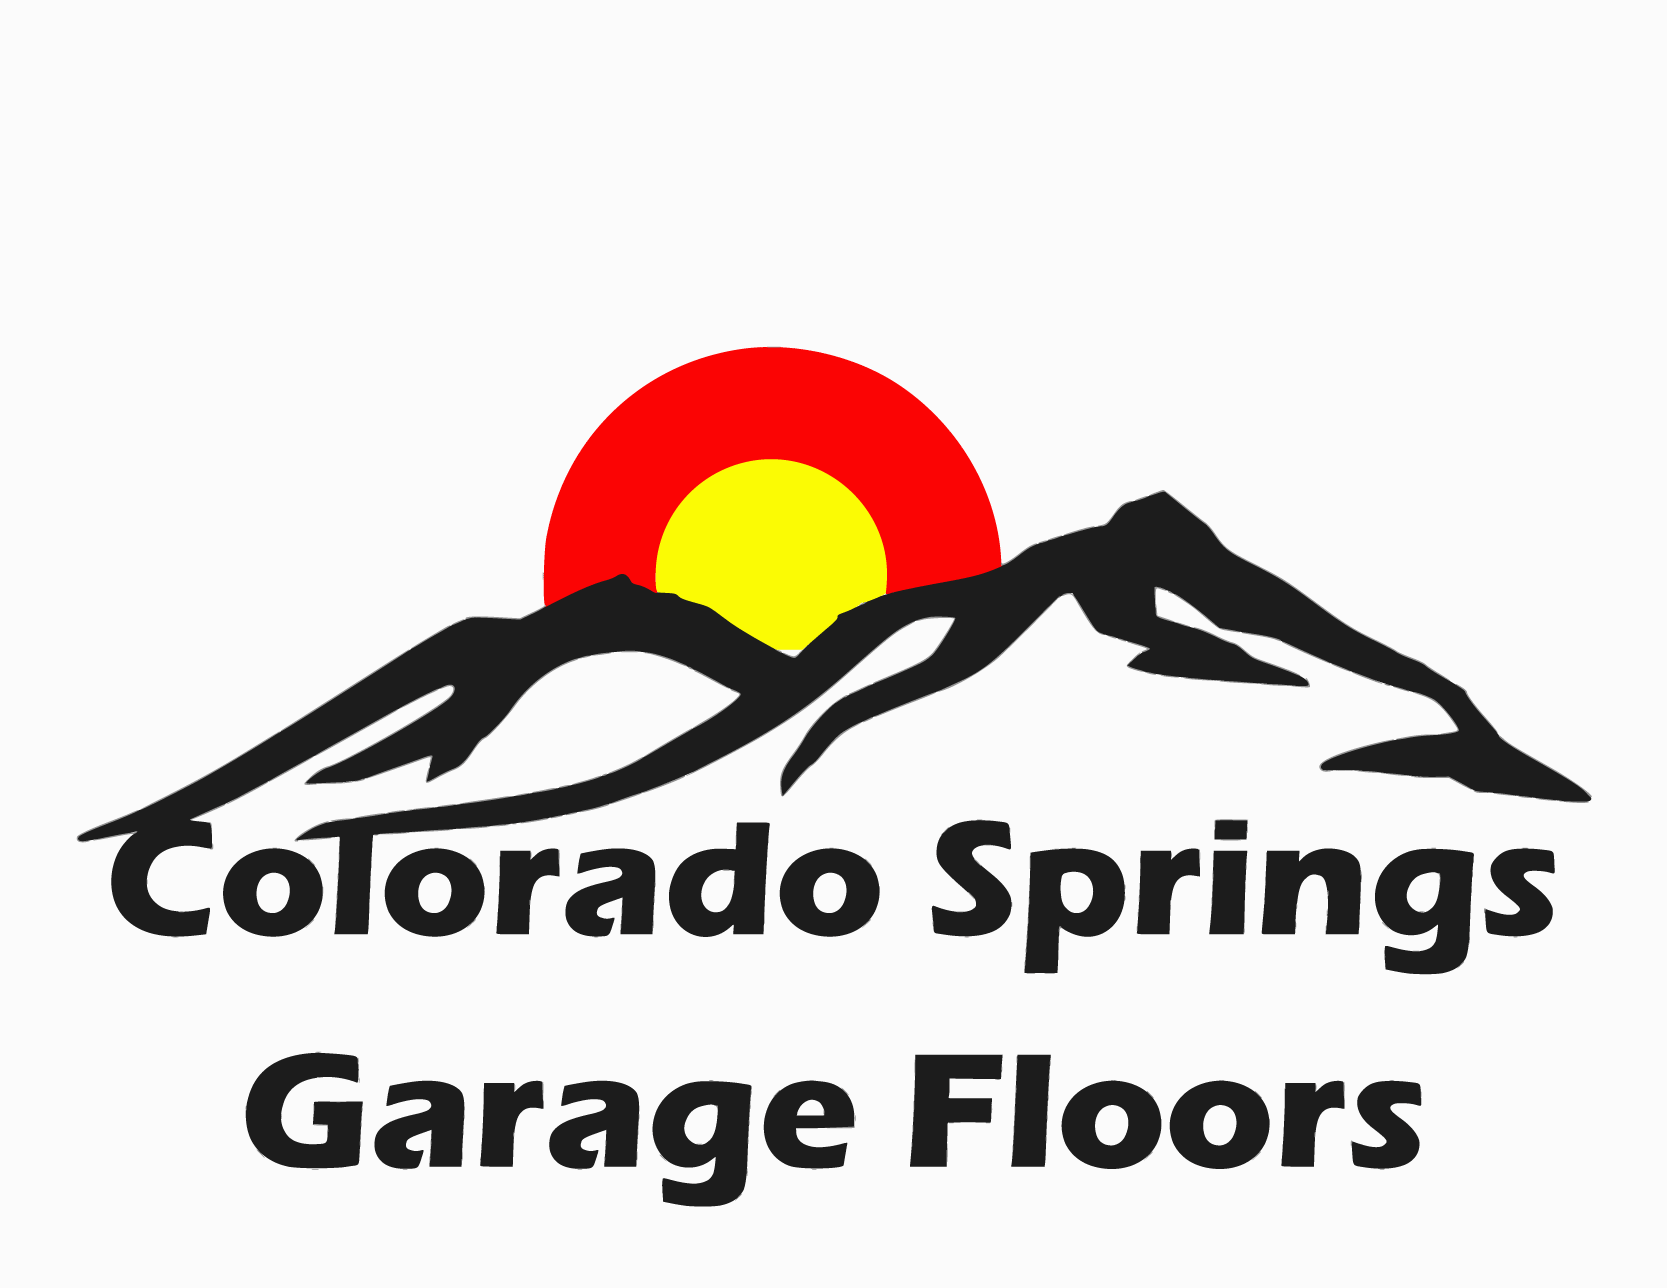 (c) Coloradospringsgaragefloors.com